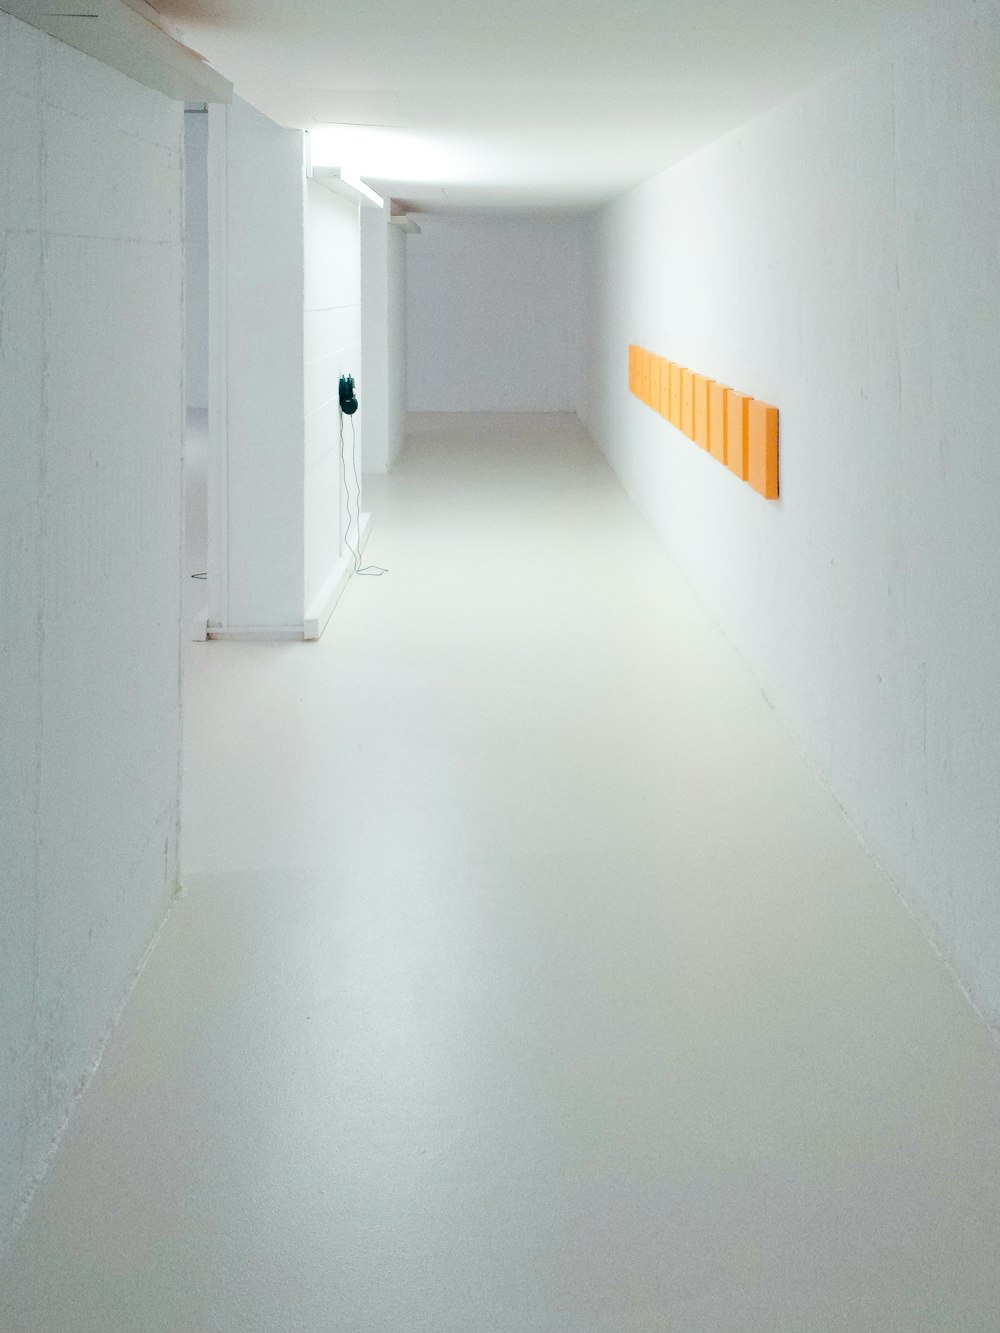 corridoio vuoto tra pareti bianche